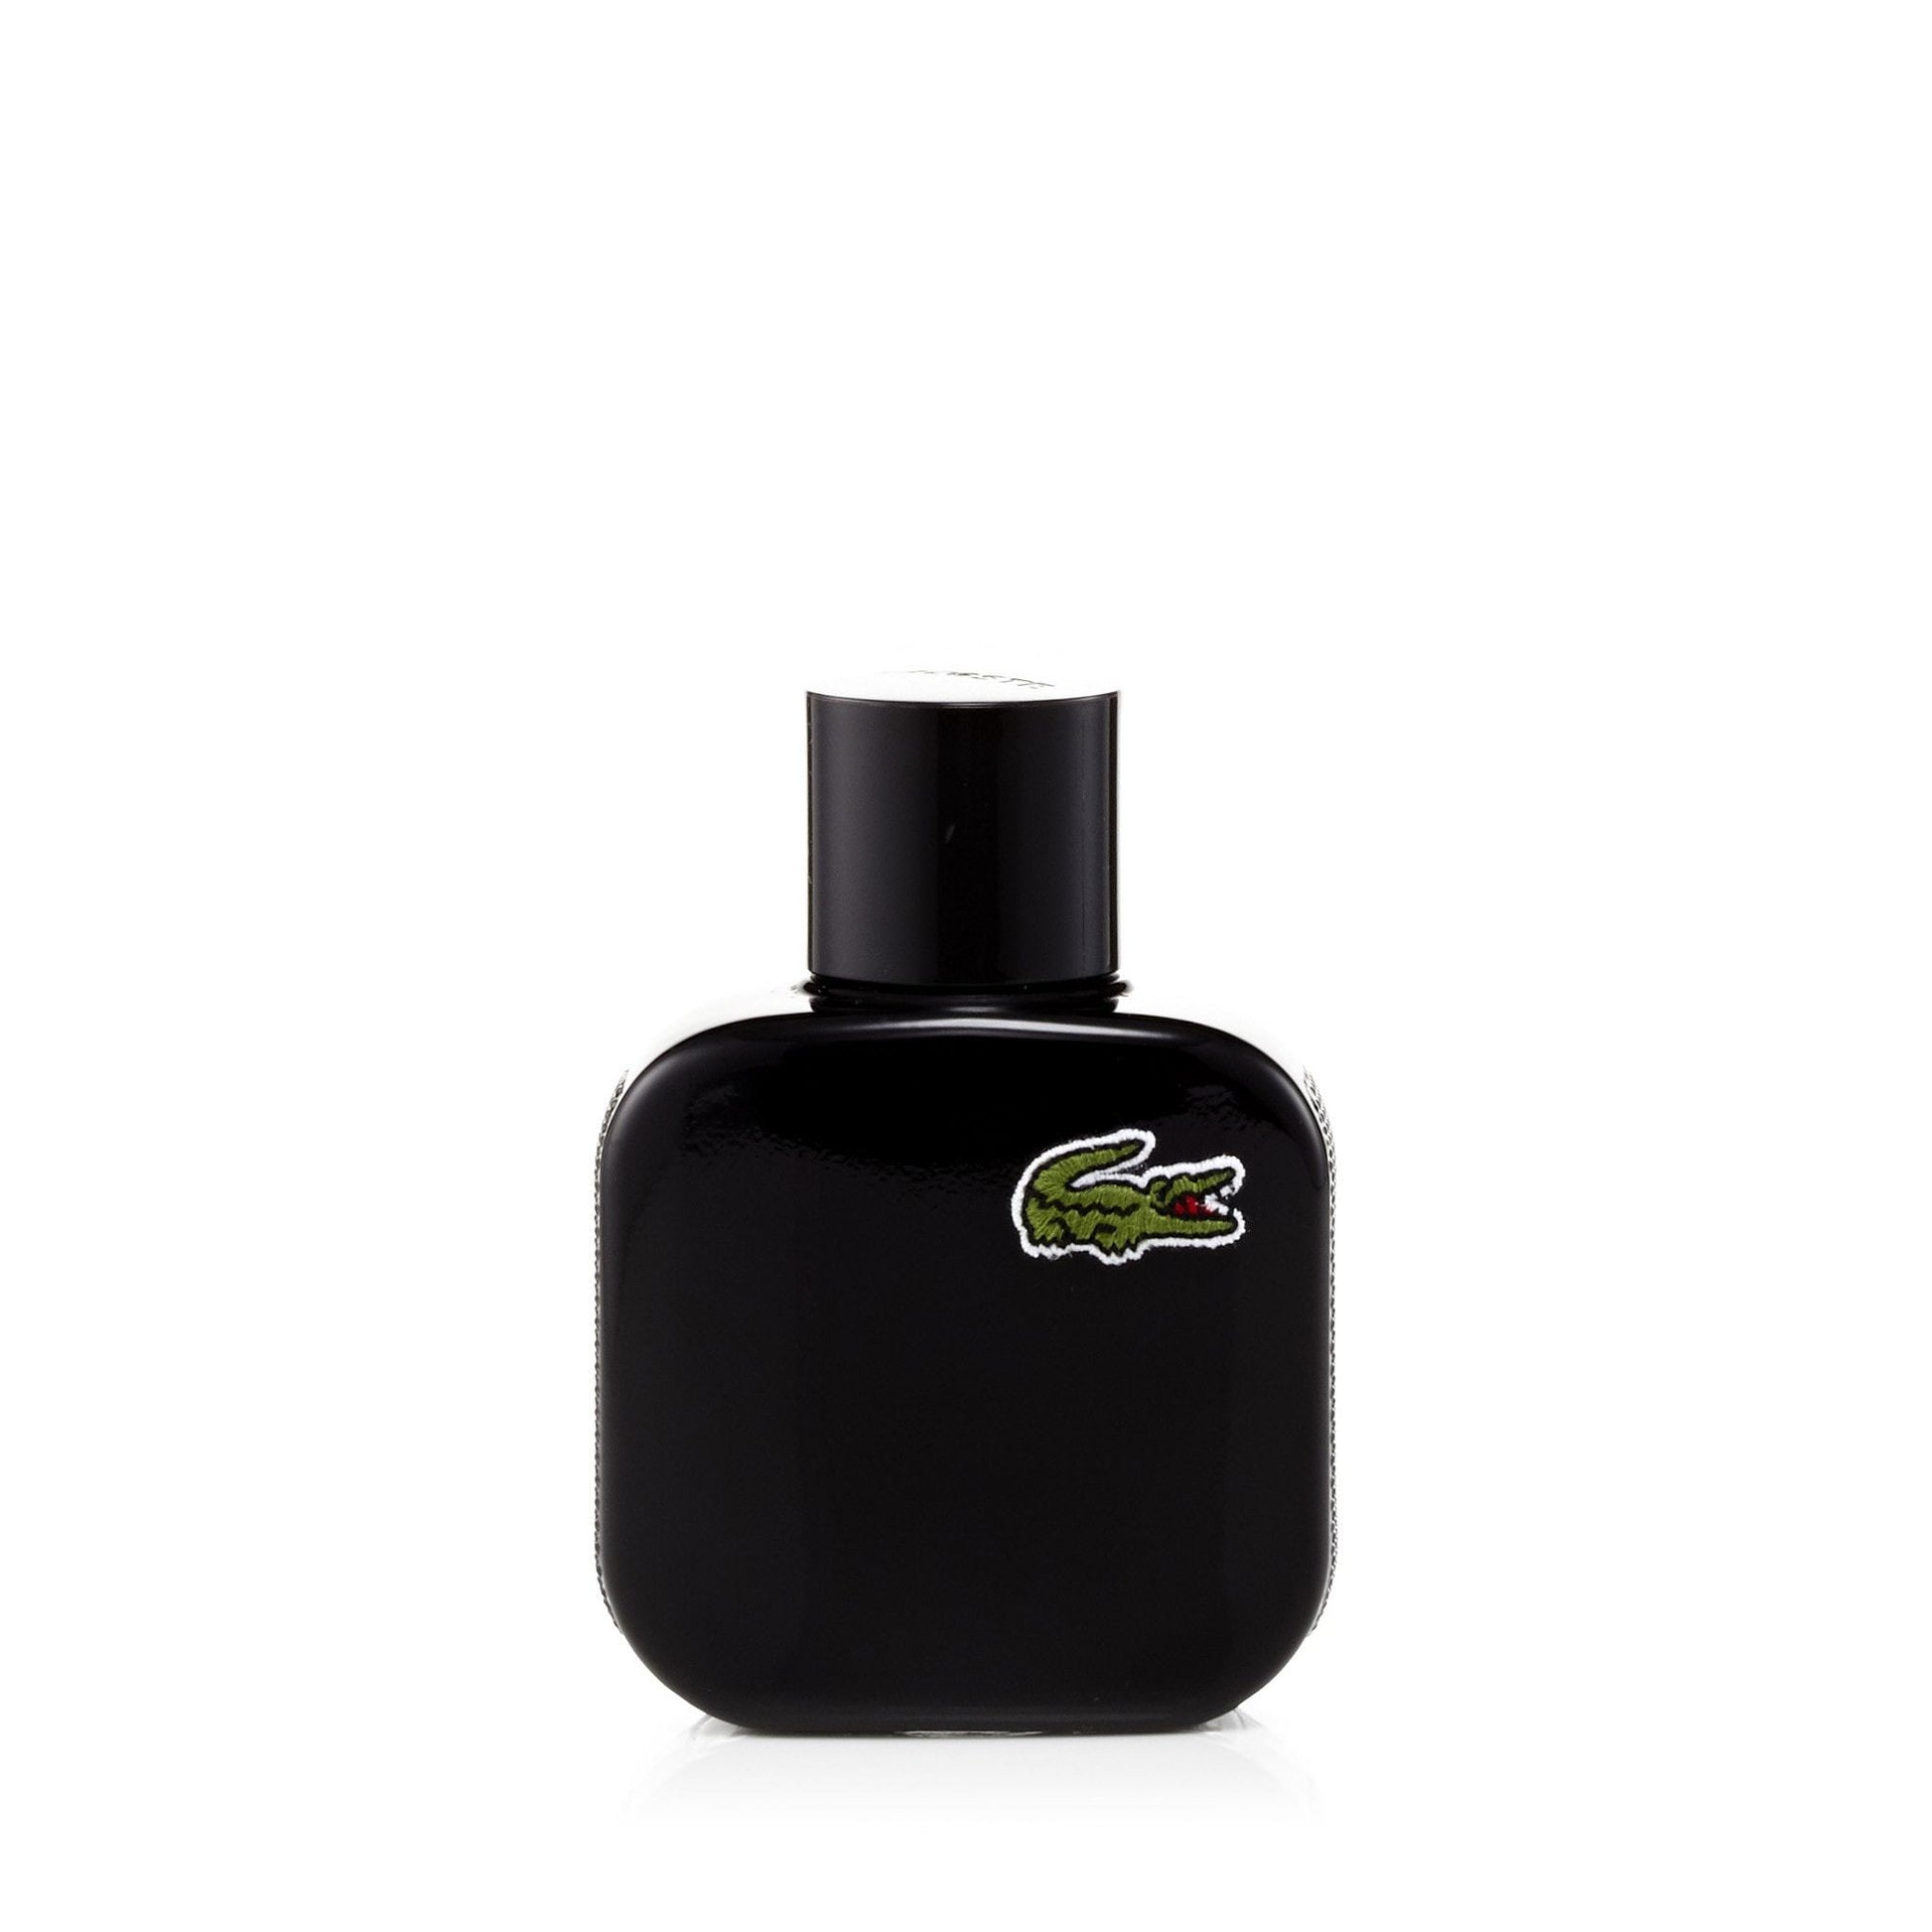 L.12.12 Noir Eau de Toilette Spray for Men by Lacoste, Product image 3